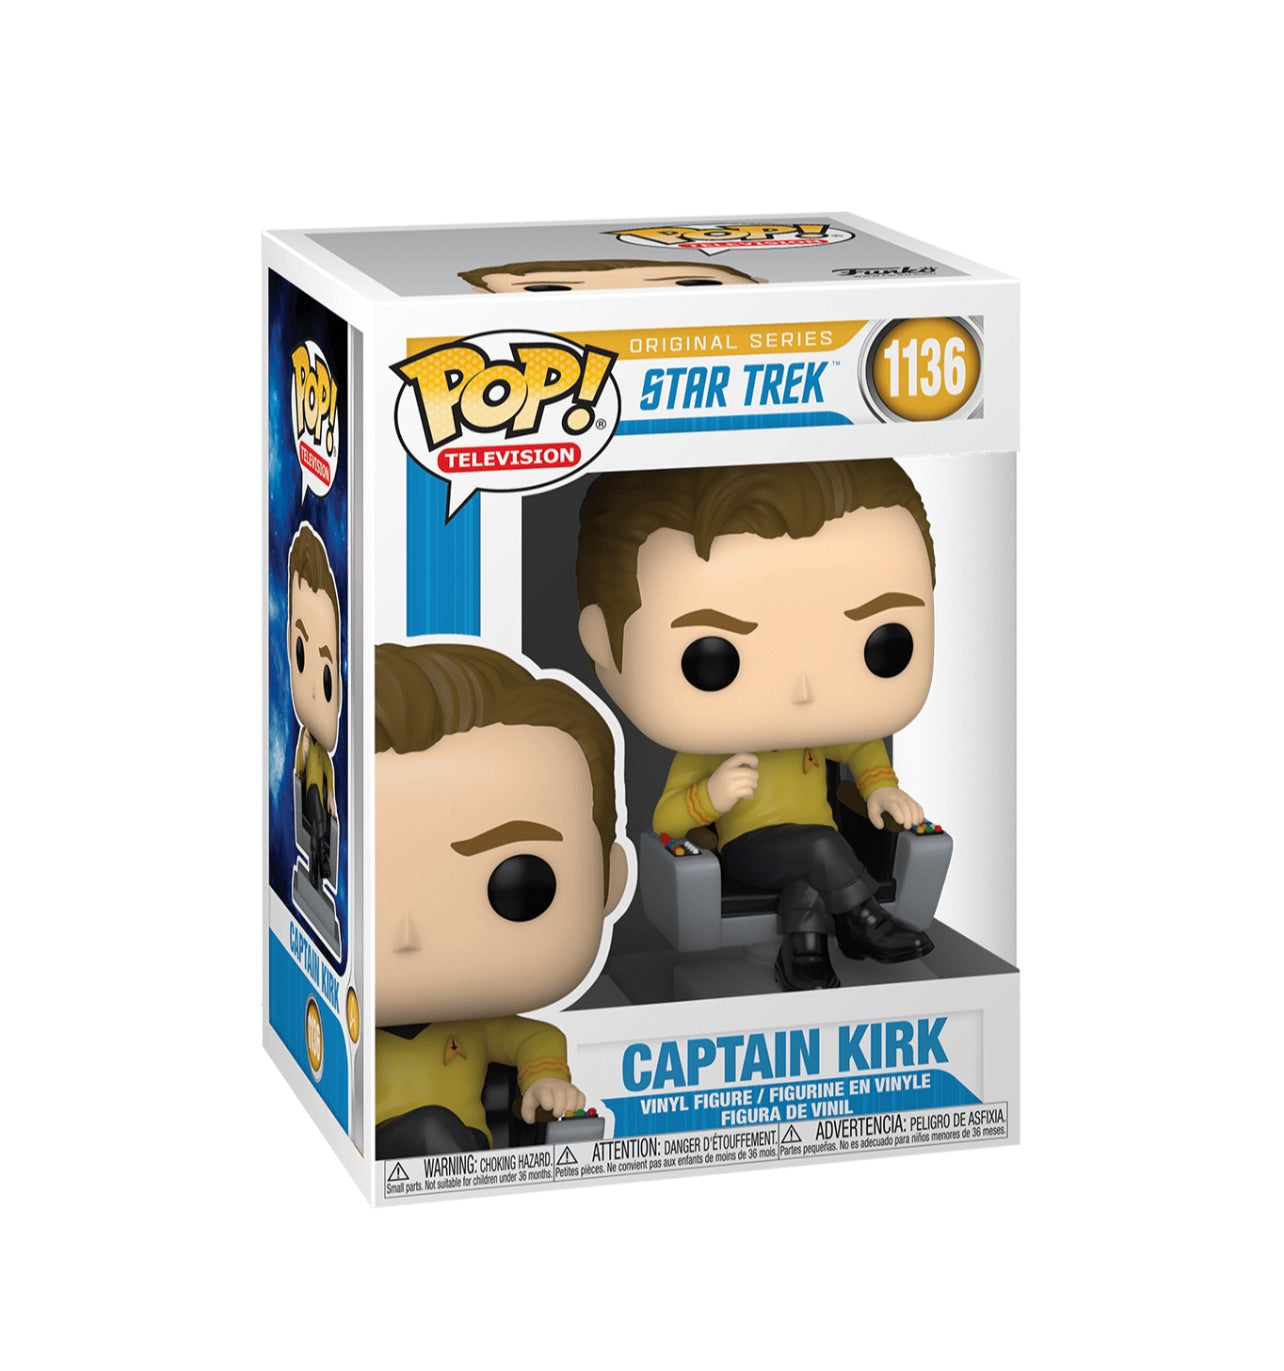 POP! TV Star Trek Captain Kirk #1136